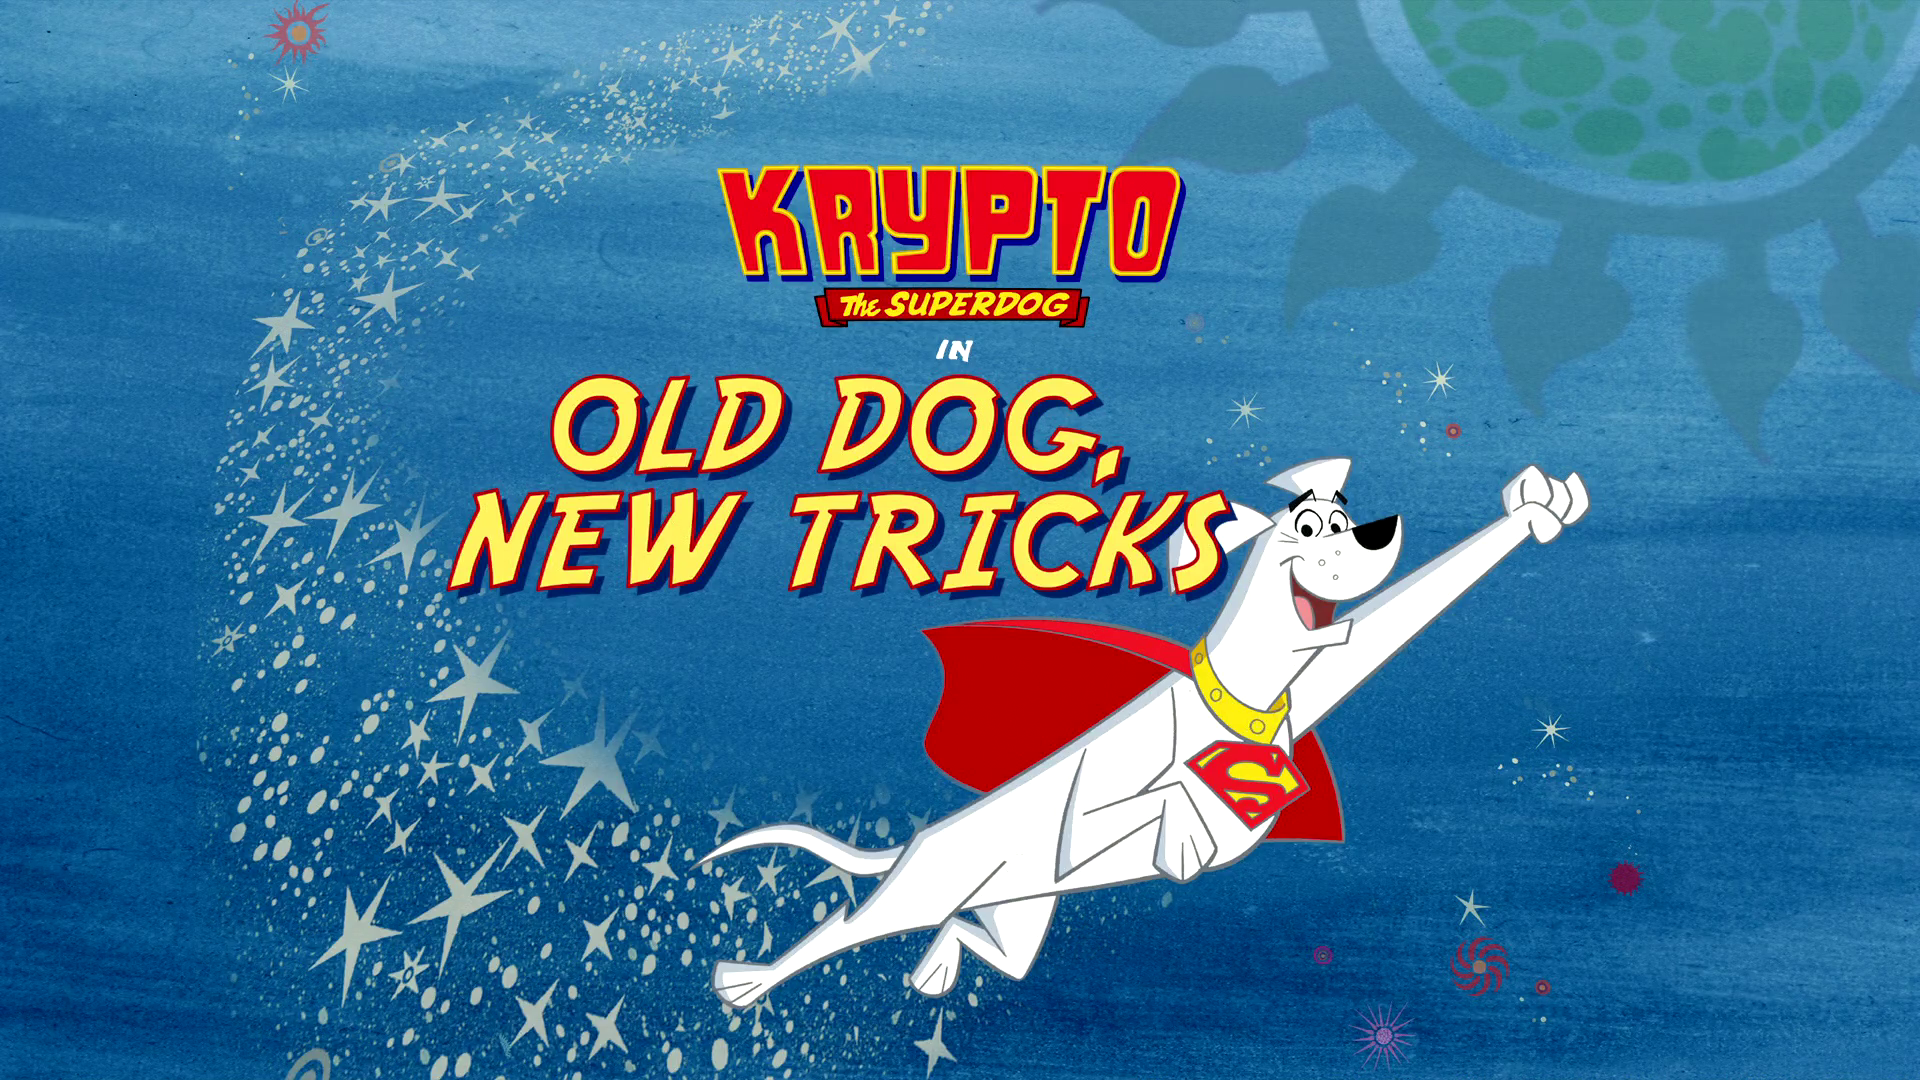 Old Dog, New Tricks. Krypto the Superdog